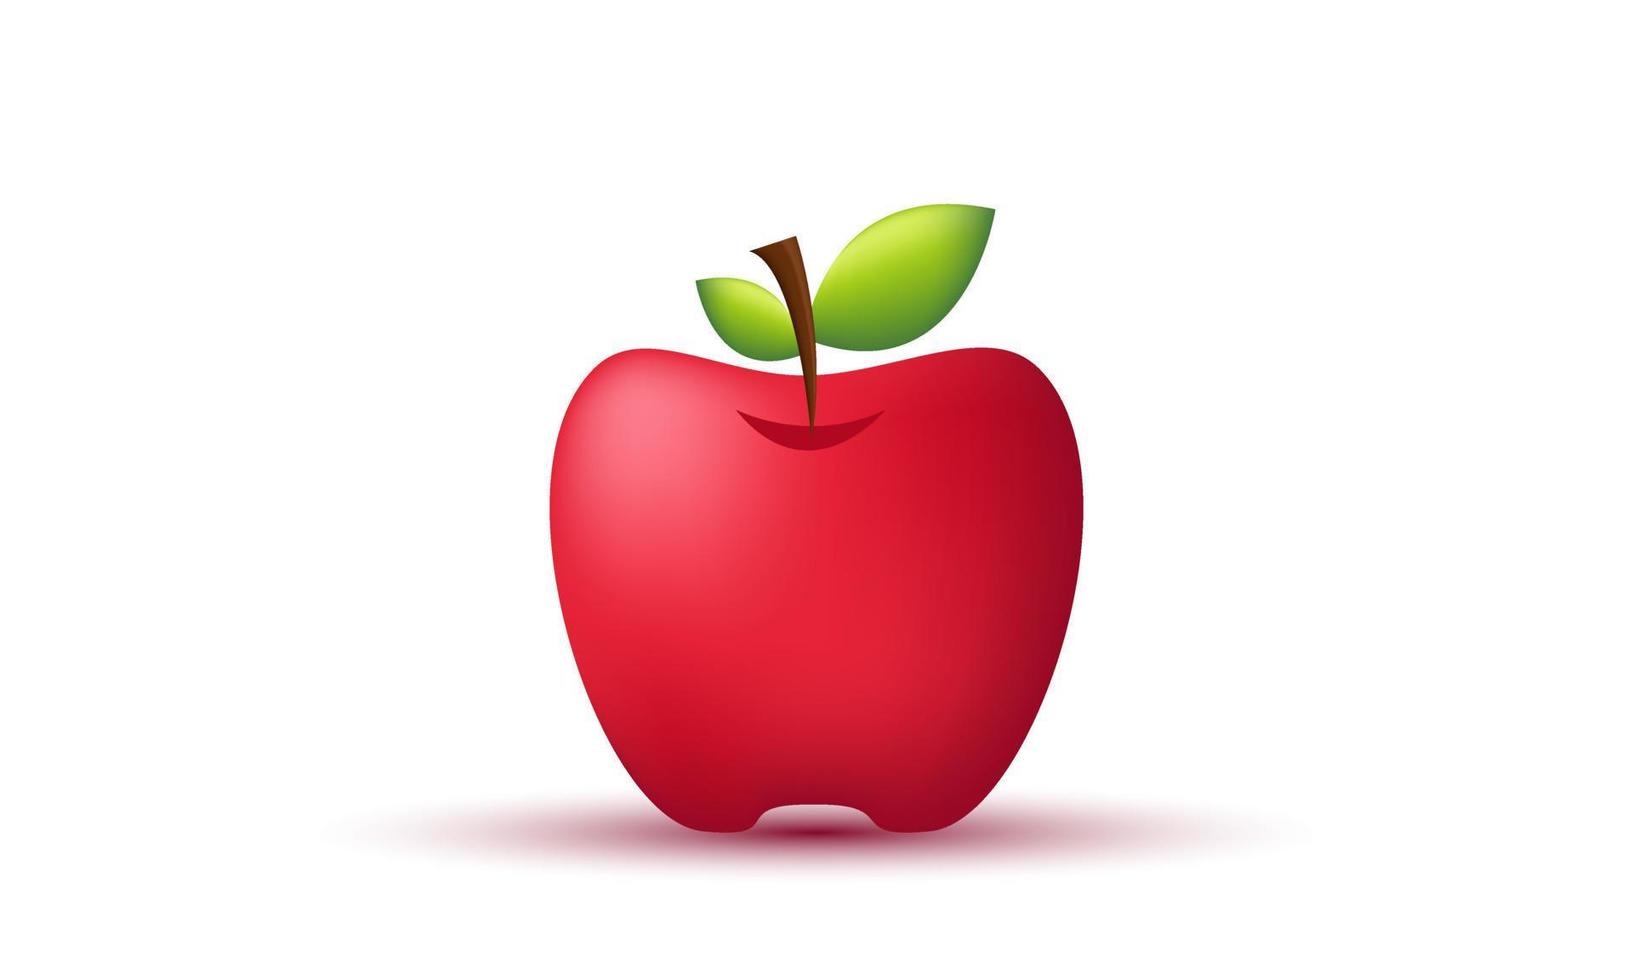 icona rossa unica del fumetto 3d della mela isolata sopra vettore